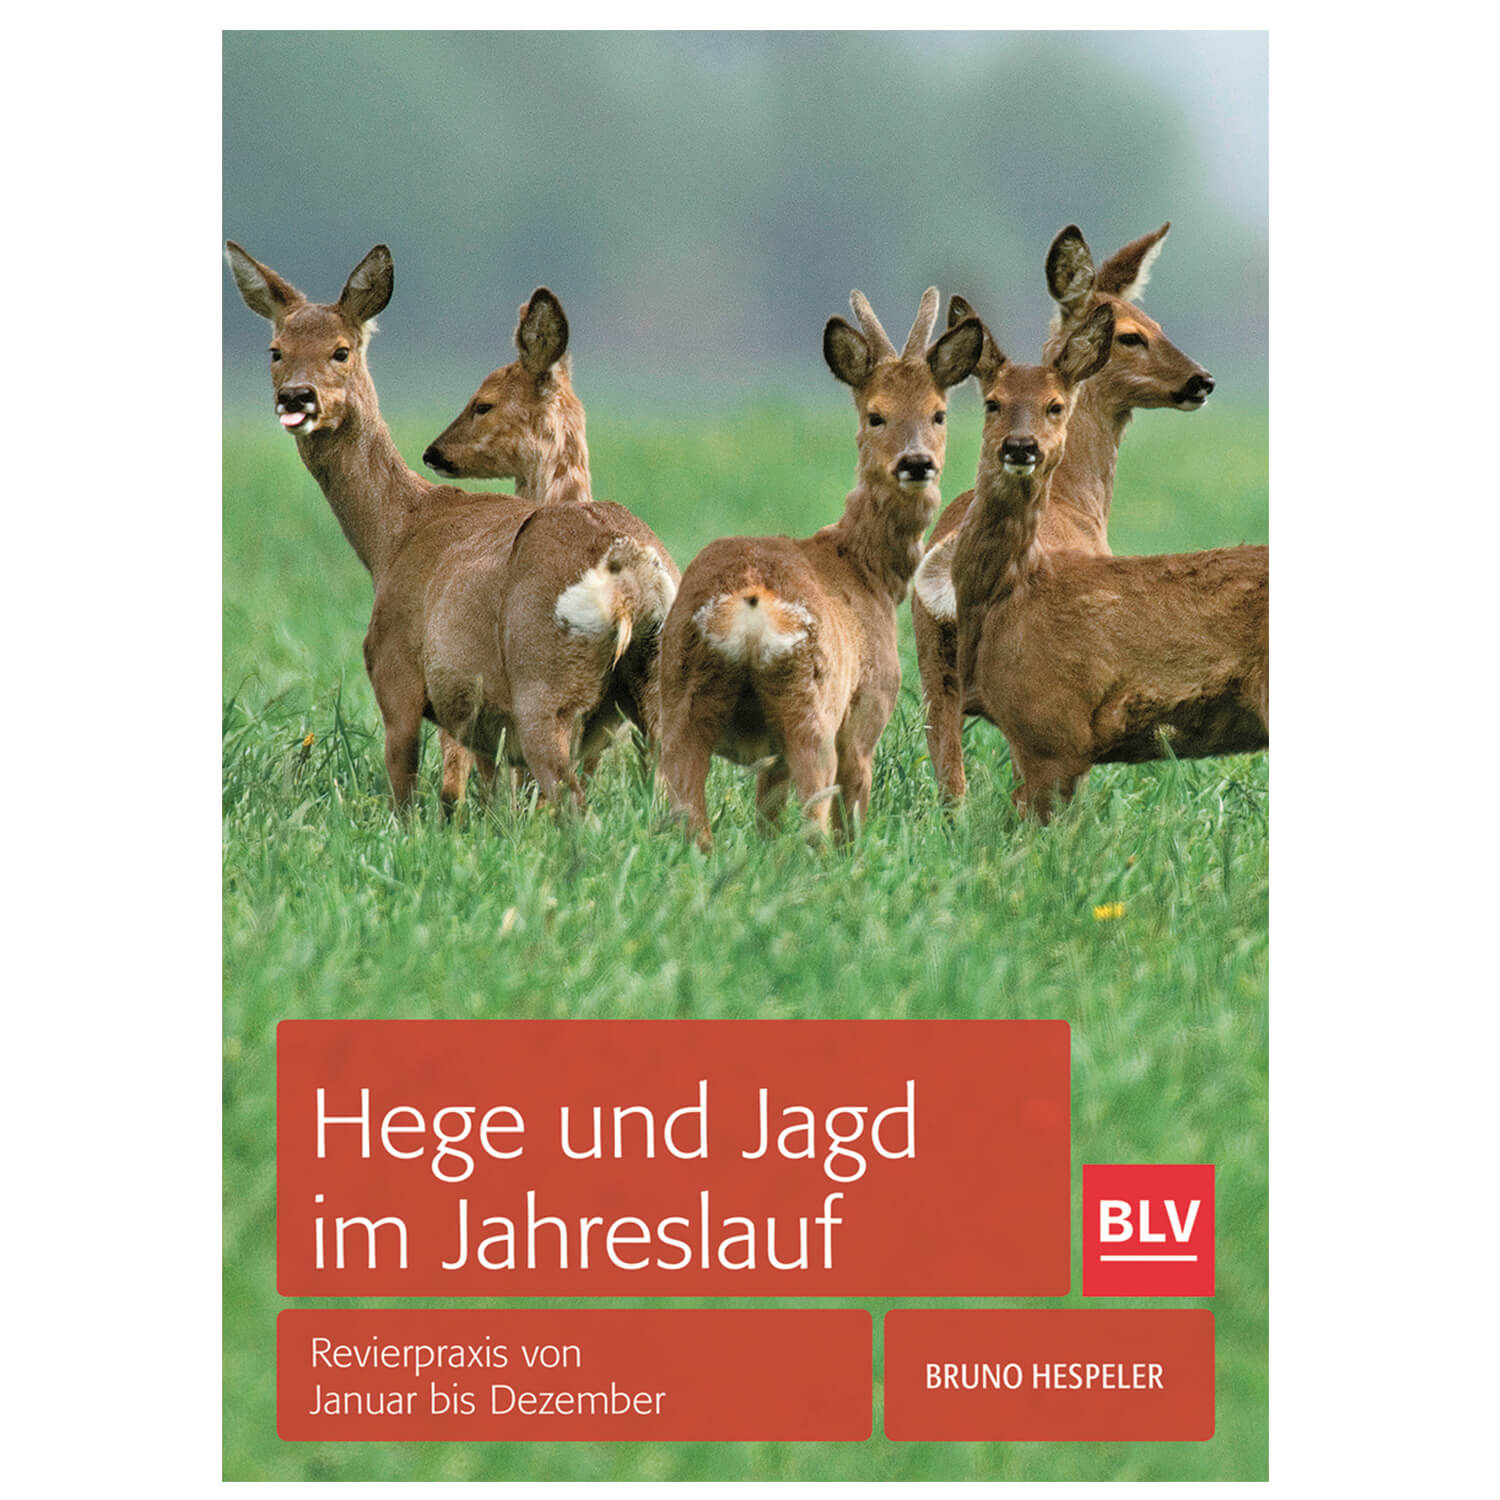 BLV Buch Hege und Jagd im Jahresverlauf - Neu im Shop